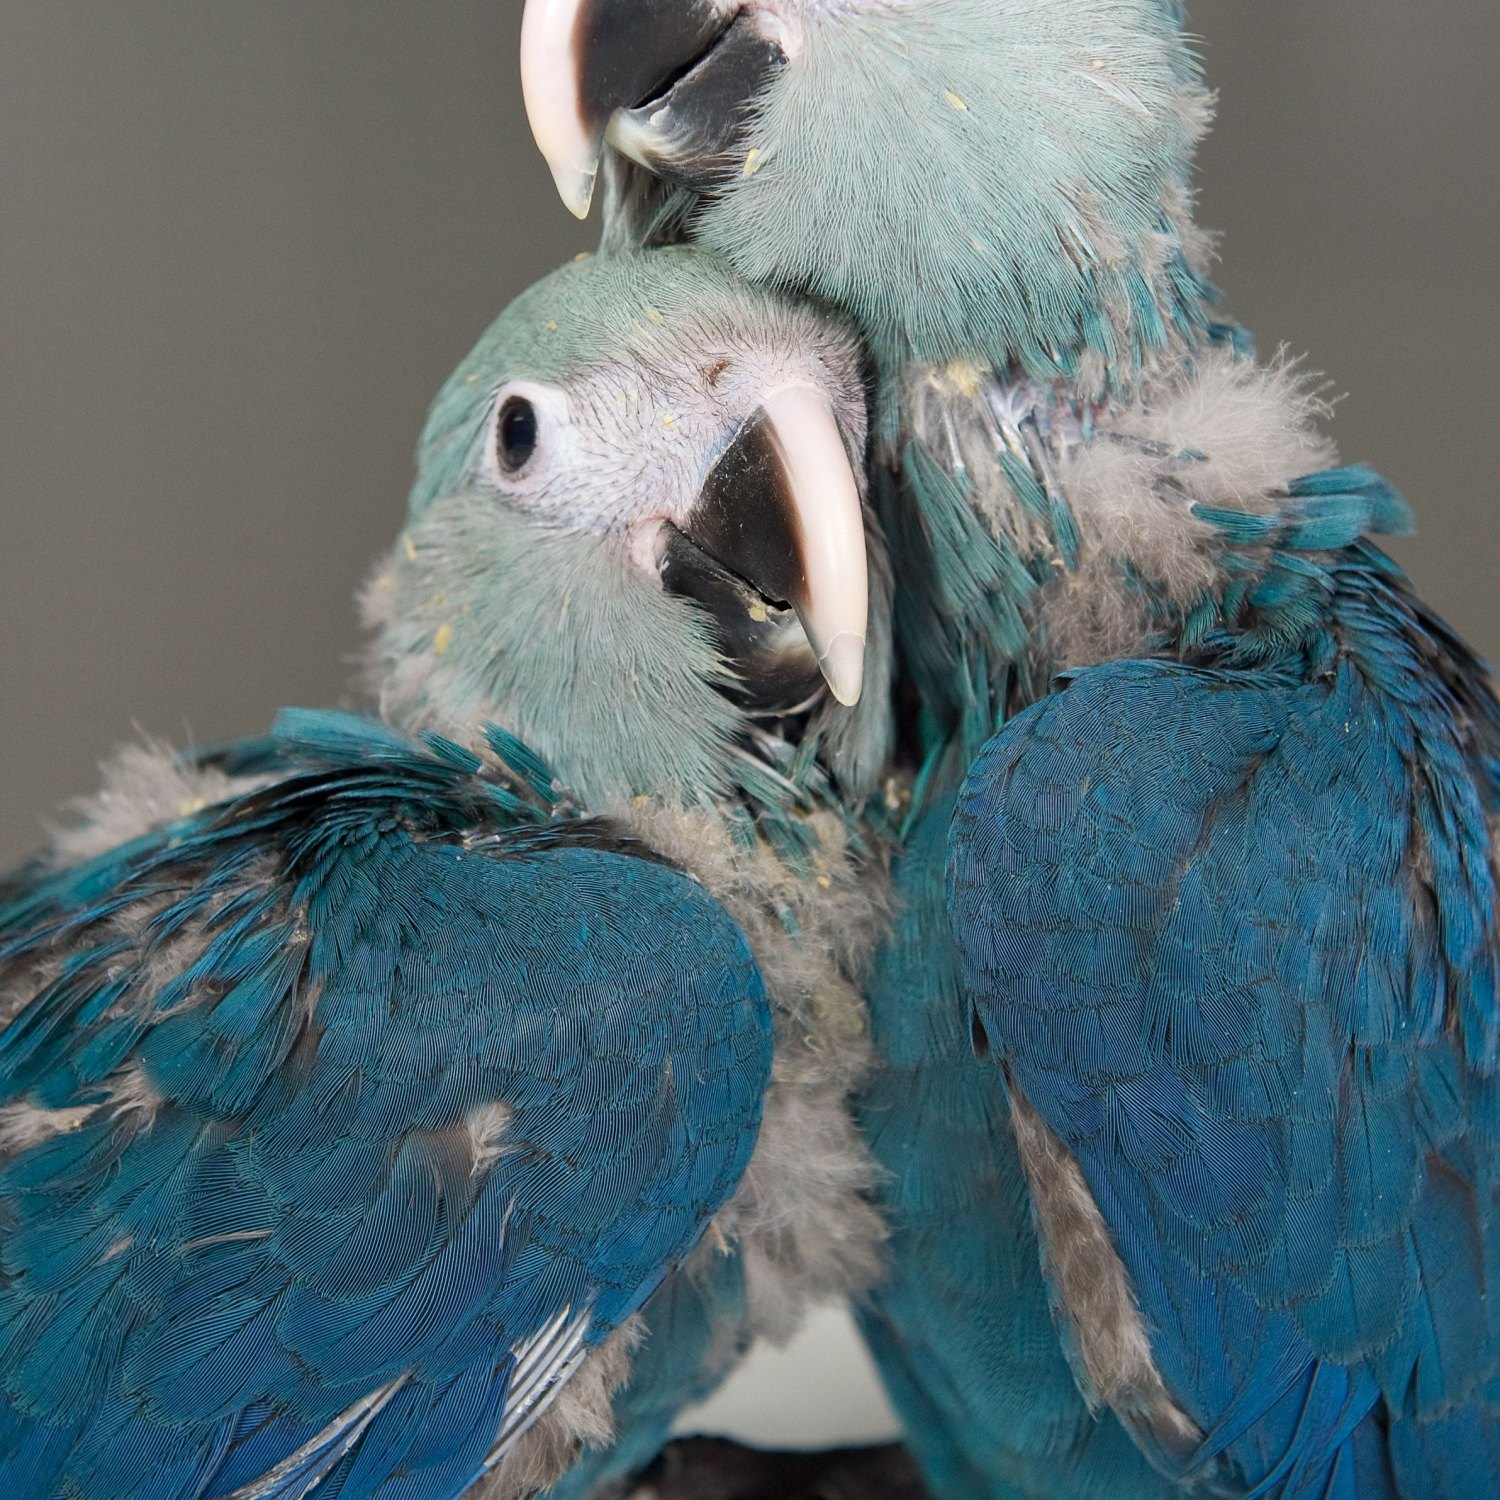 Spixs Macaw